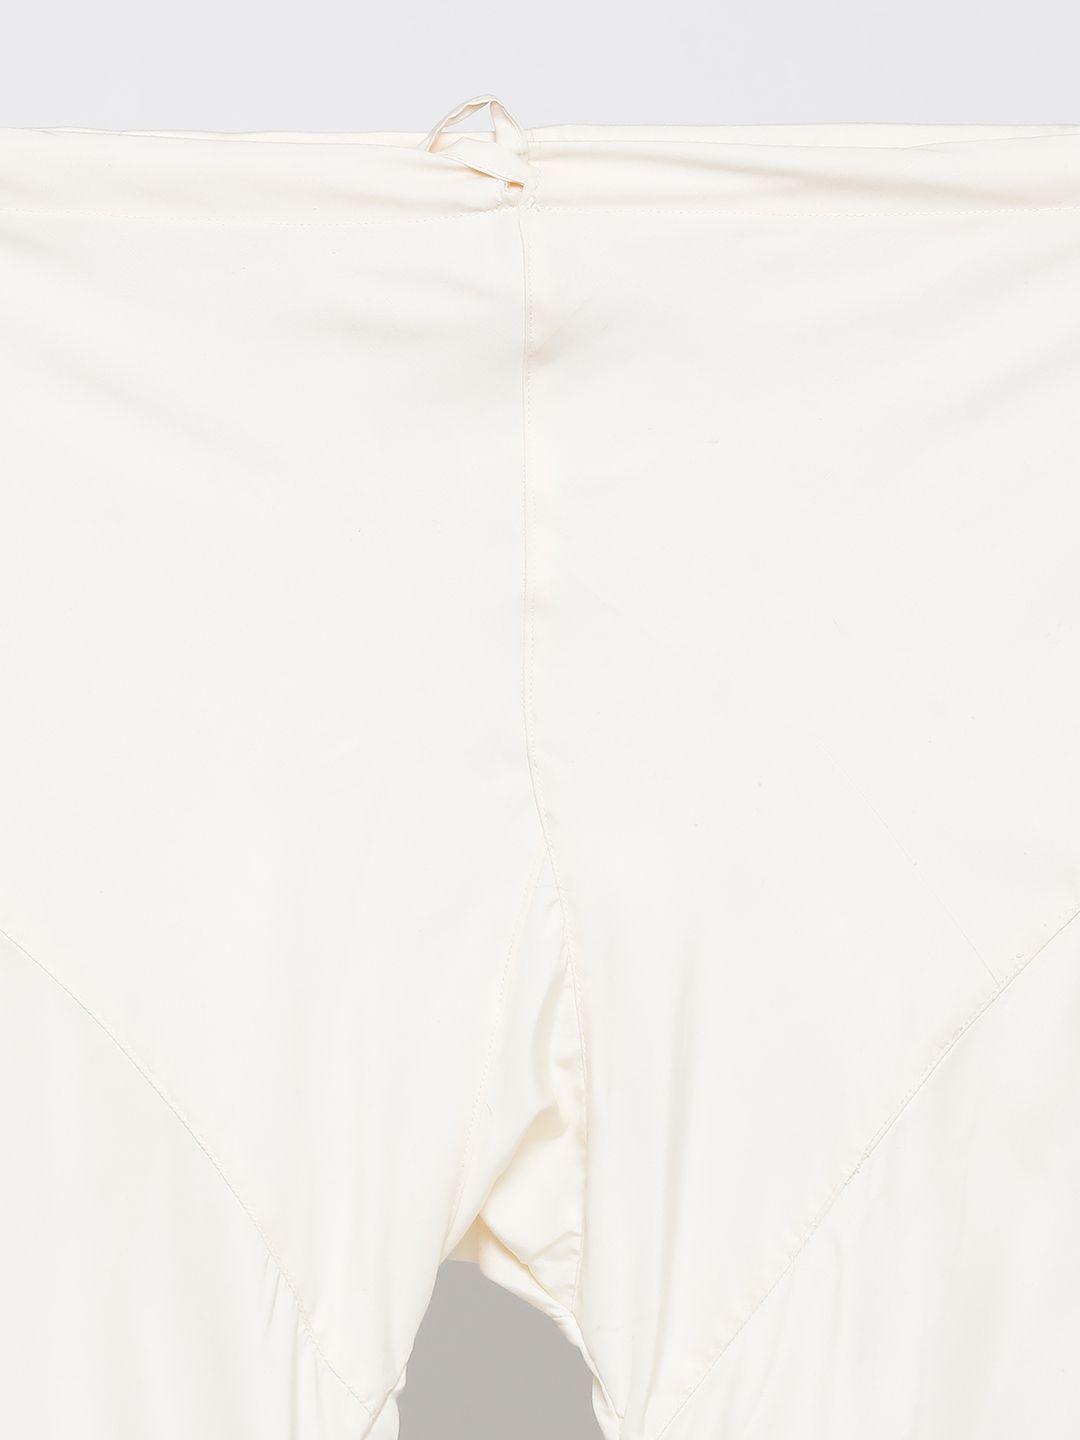 Men's White Cotton Blend Kurta, Ethnic Jacket and Pyjama Set